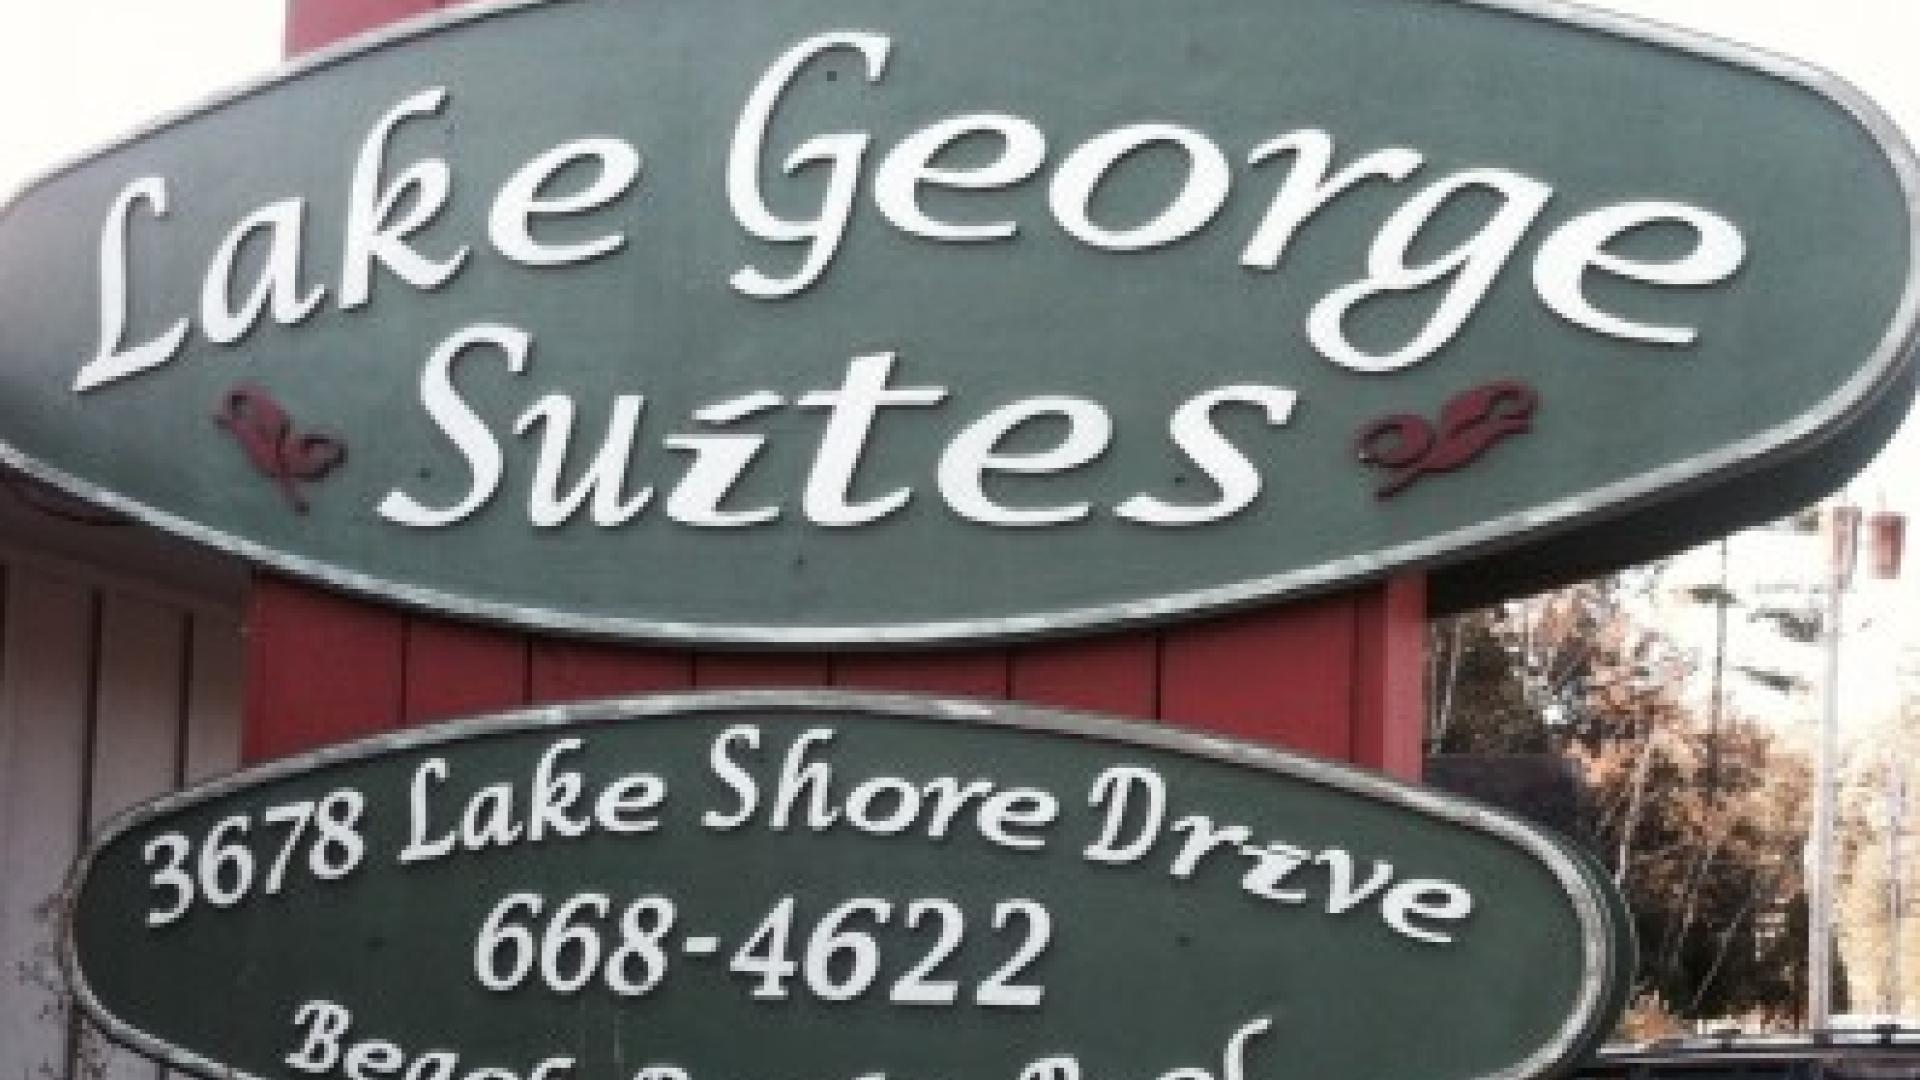 Lake George Suites